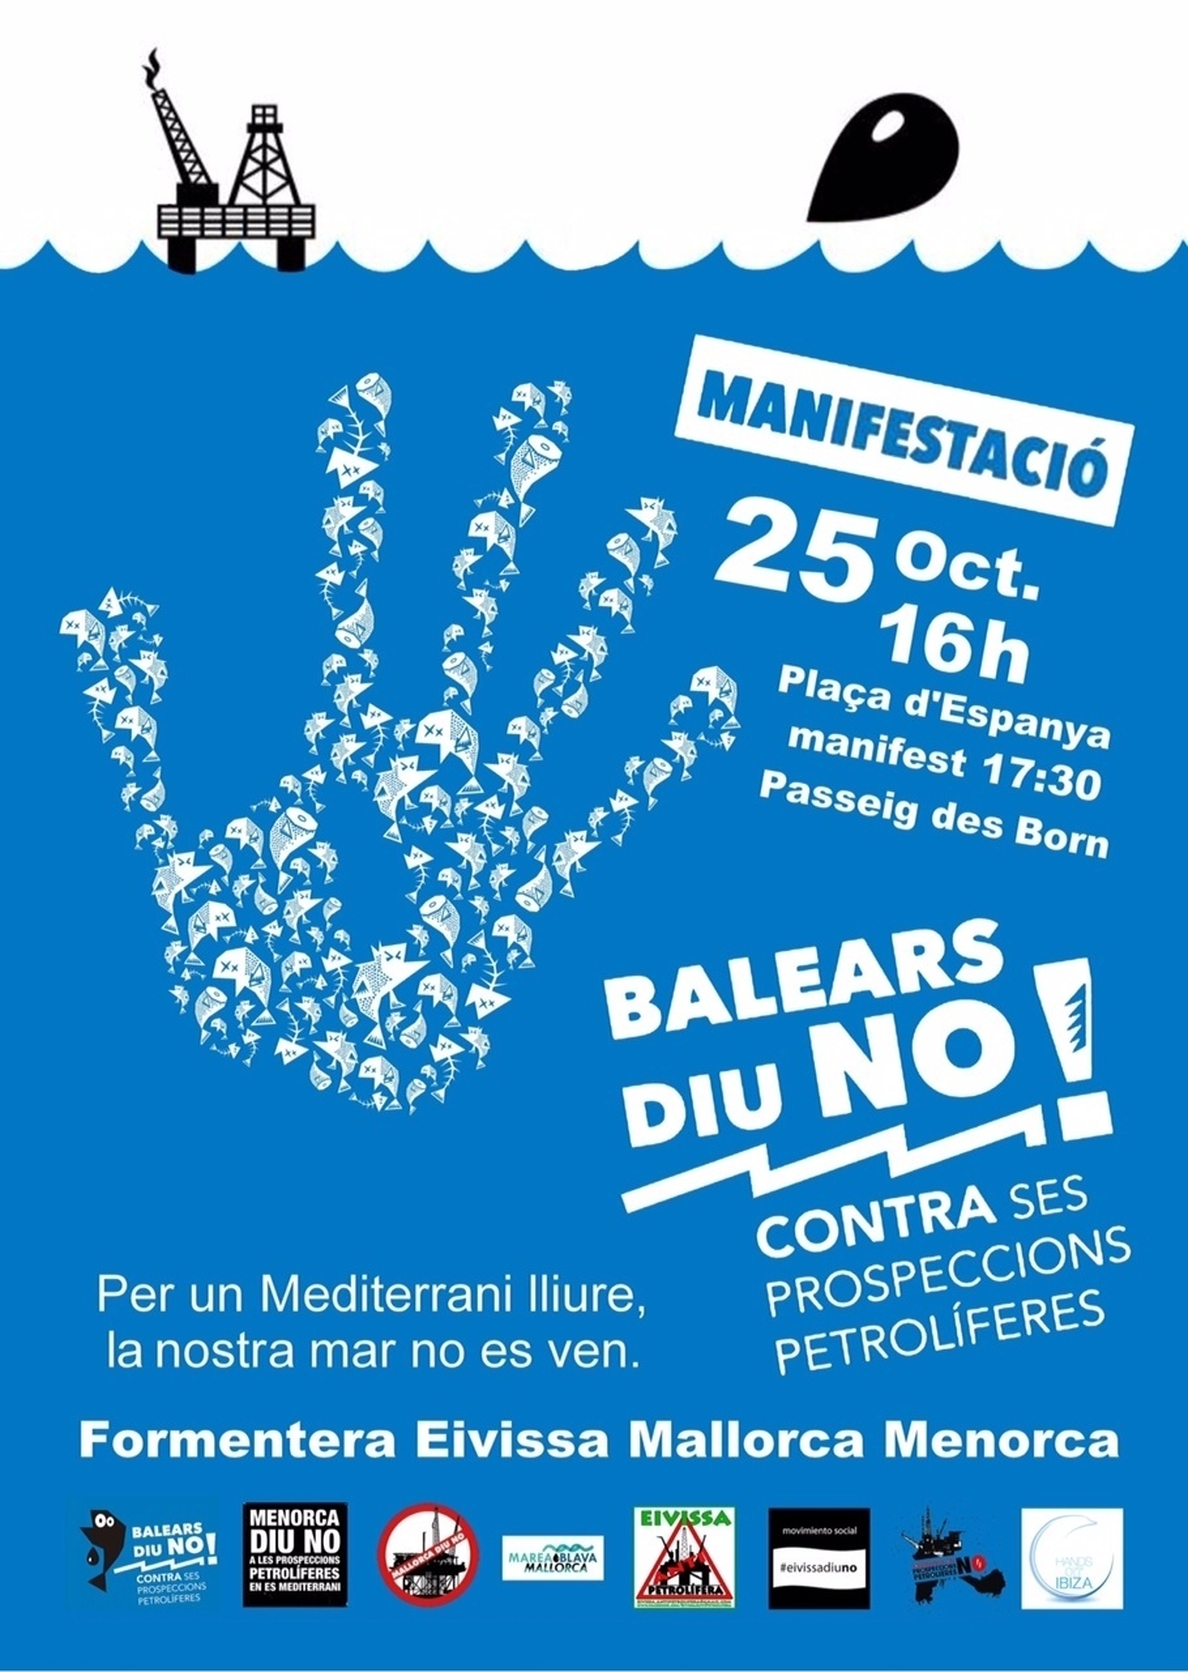 La plataforma Balears Diu NO convoca movilizaciones masivas el 25 de octubre en contra de las prospecciones